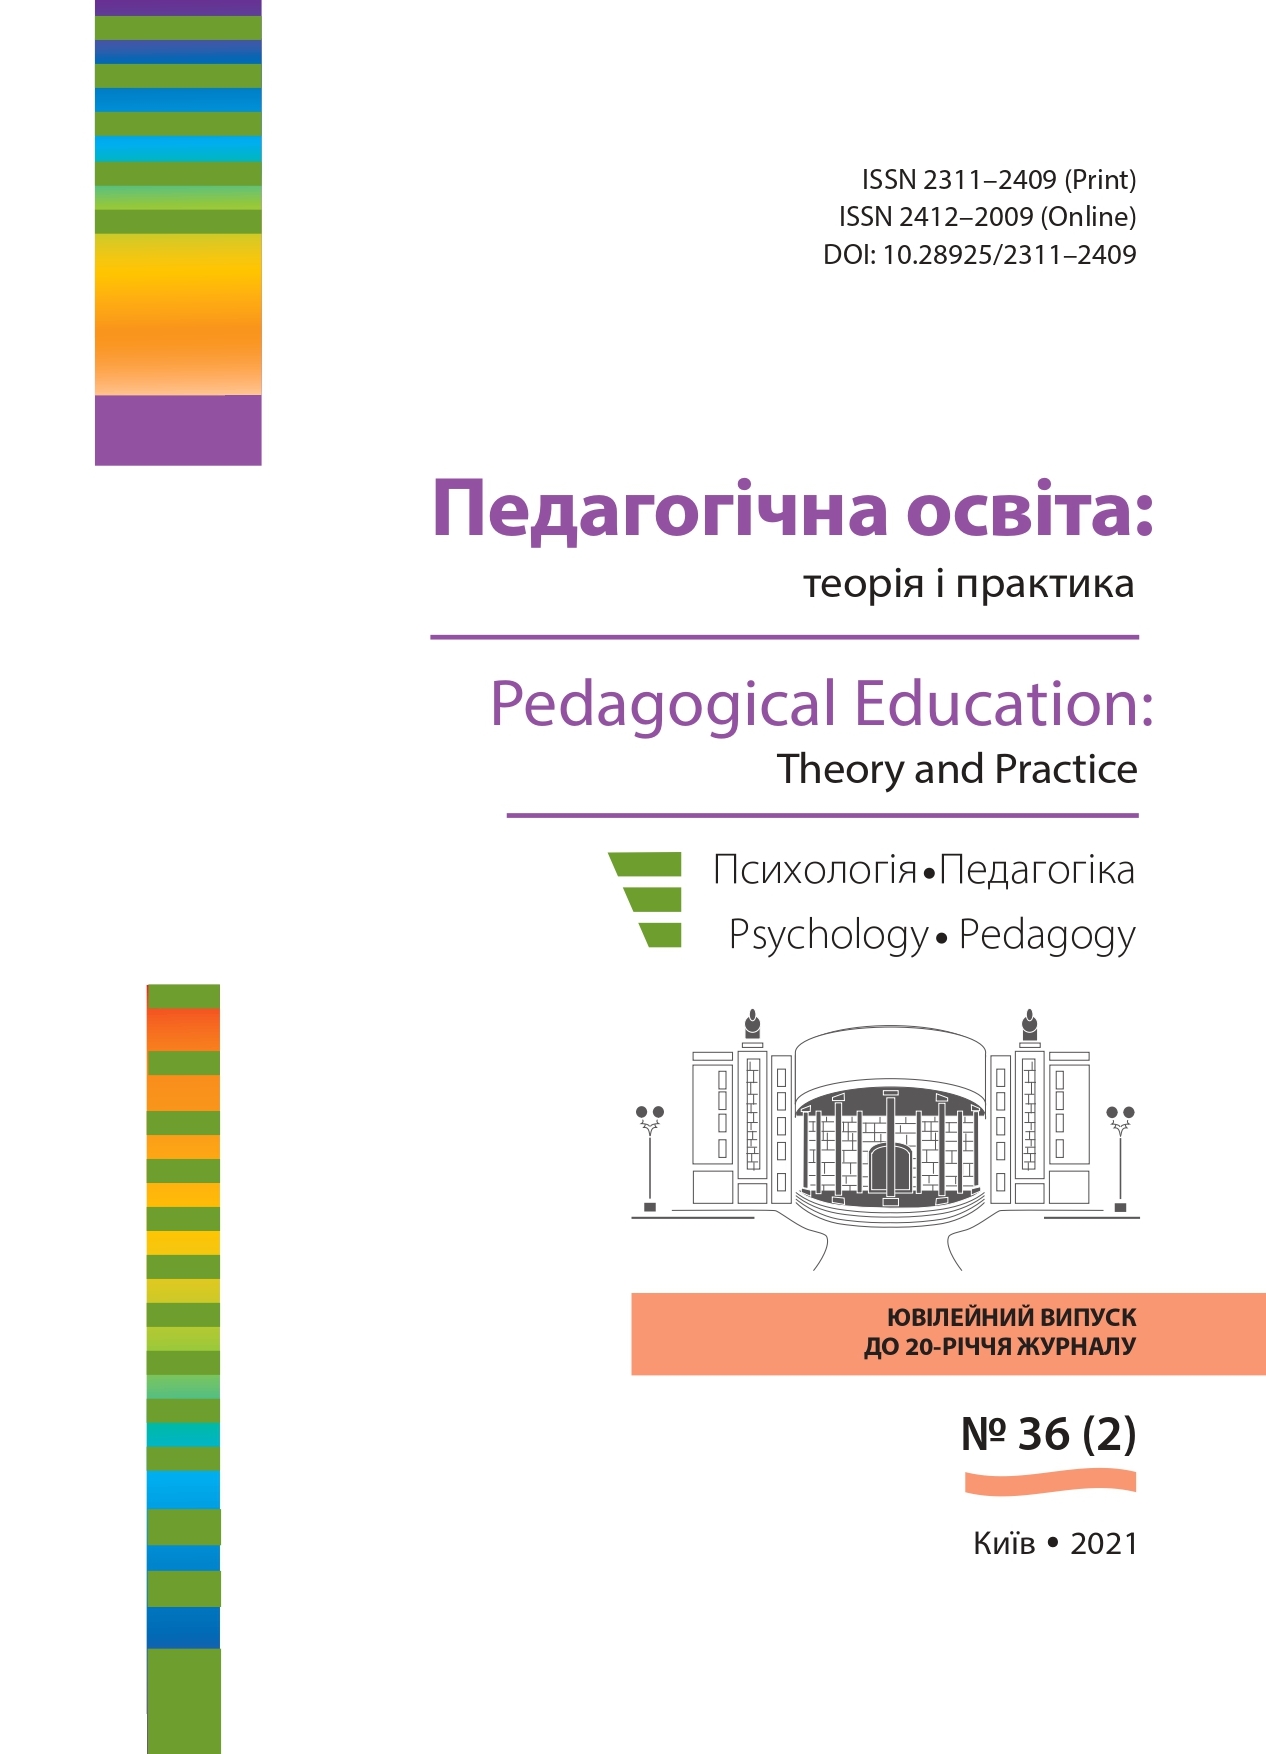 					View № 36 (2) (2021): Педагогічна освіта:теорія і практика.  Психологія. Педагогіка. 
				